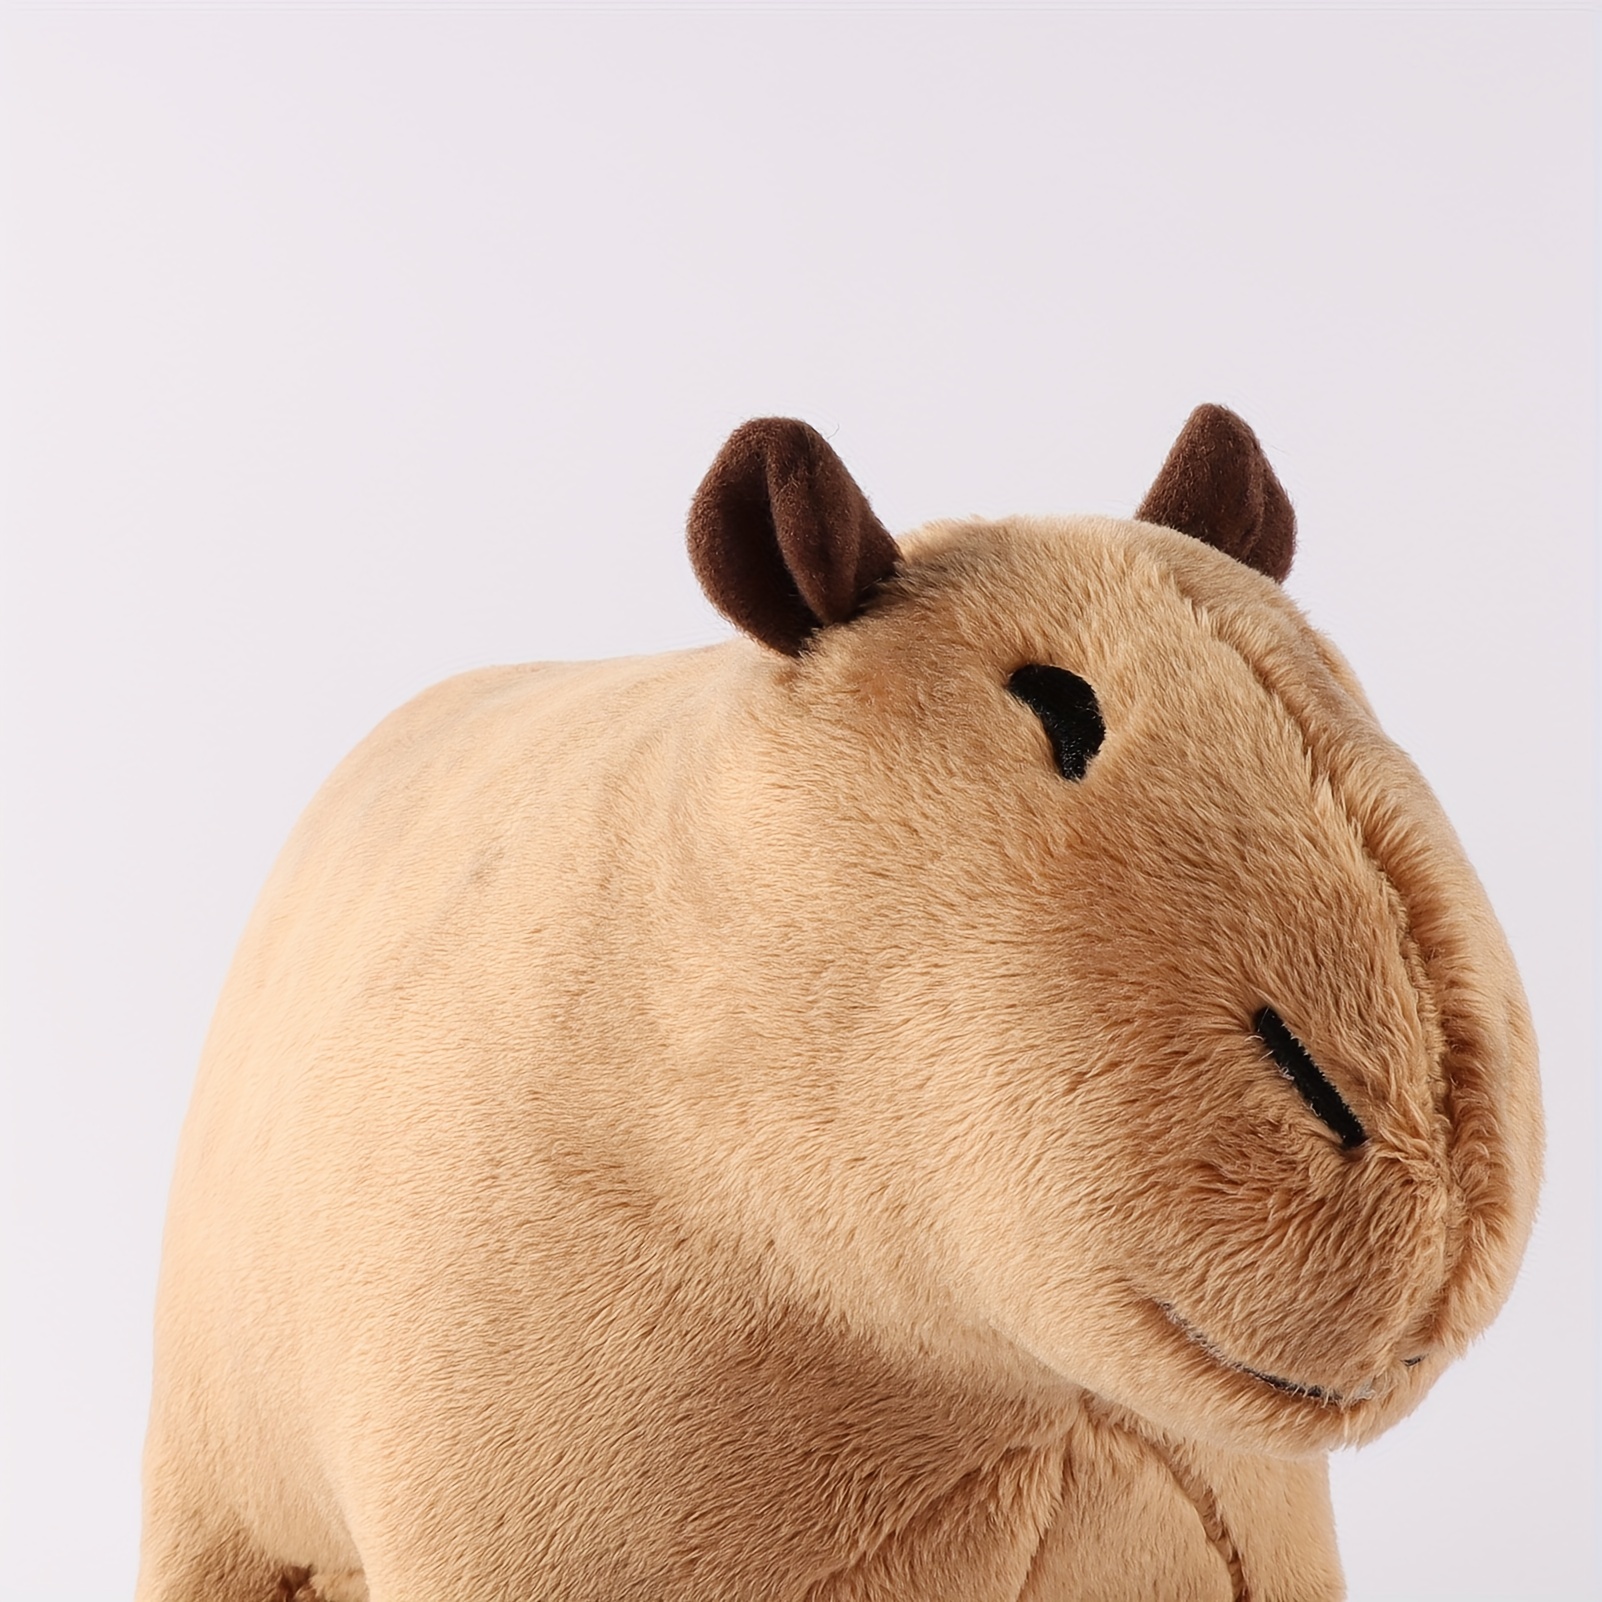 LOBOY Capybara Spielzeug  Weiches, realistisches  Tier-Entspannungsspielzeug für Kinder,Tierisches Nickerchen-Wurfkissen zum  Umarmen, Begleiten, niedliche Capybara-für Sofa-Bett-Couch-Dekoration :  : Spielzeug